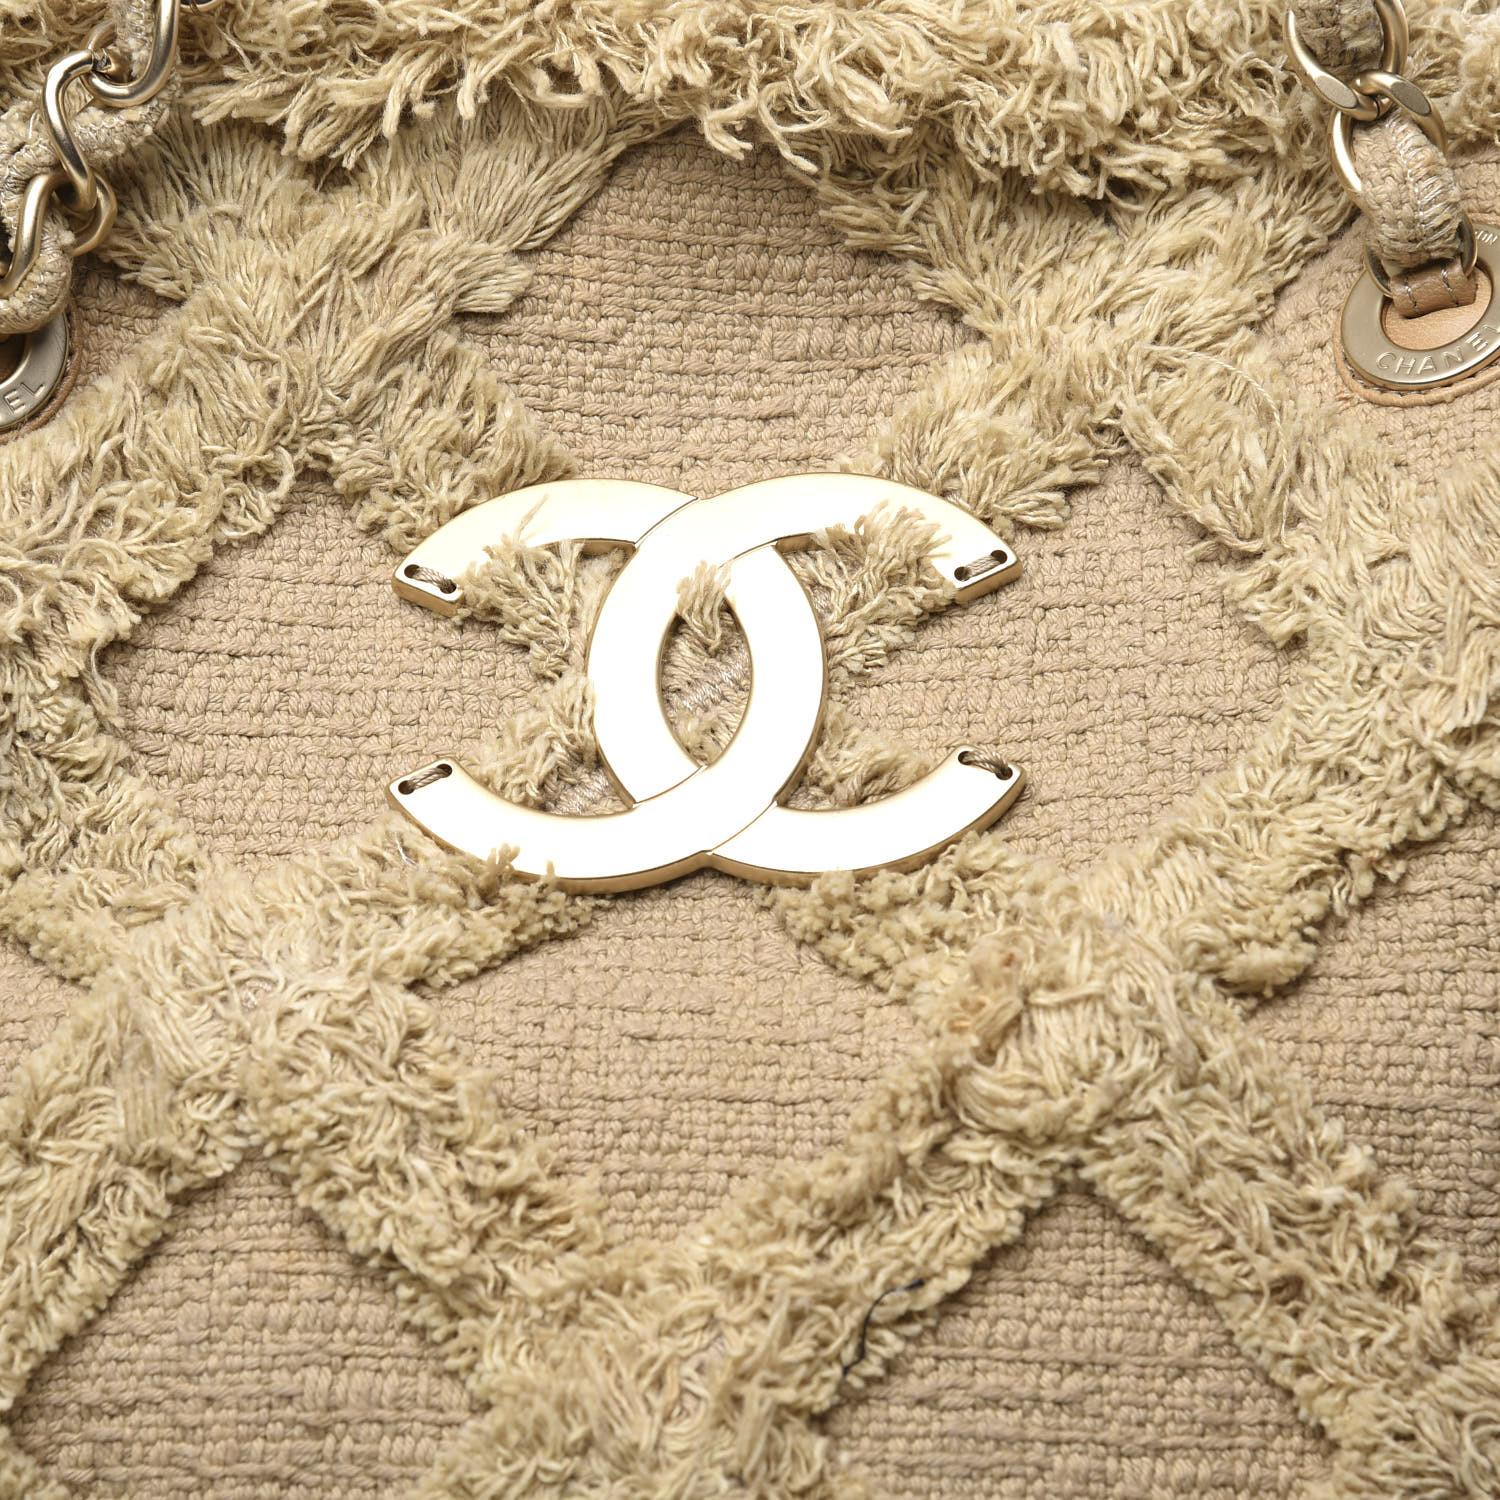 Este Chanel Nature Tote de tweed acolchado, confeccionado en tweed acolchado beige, presenta ribetes superiores acolchados con rombos, dos correas de cadena de piel entretejida, detalles de pliegues invertidos y herrajes dorados mate. Su cierre